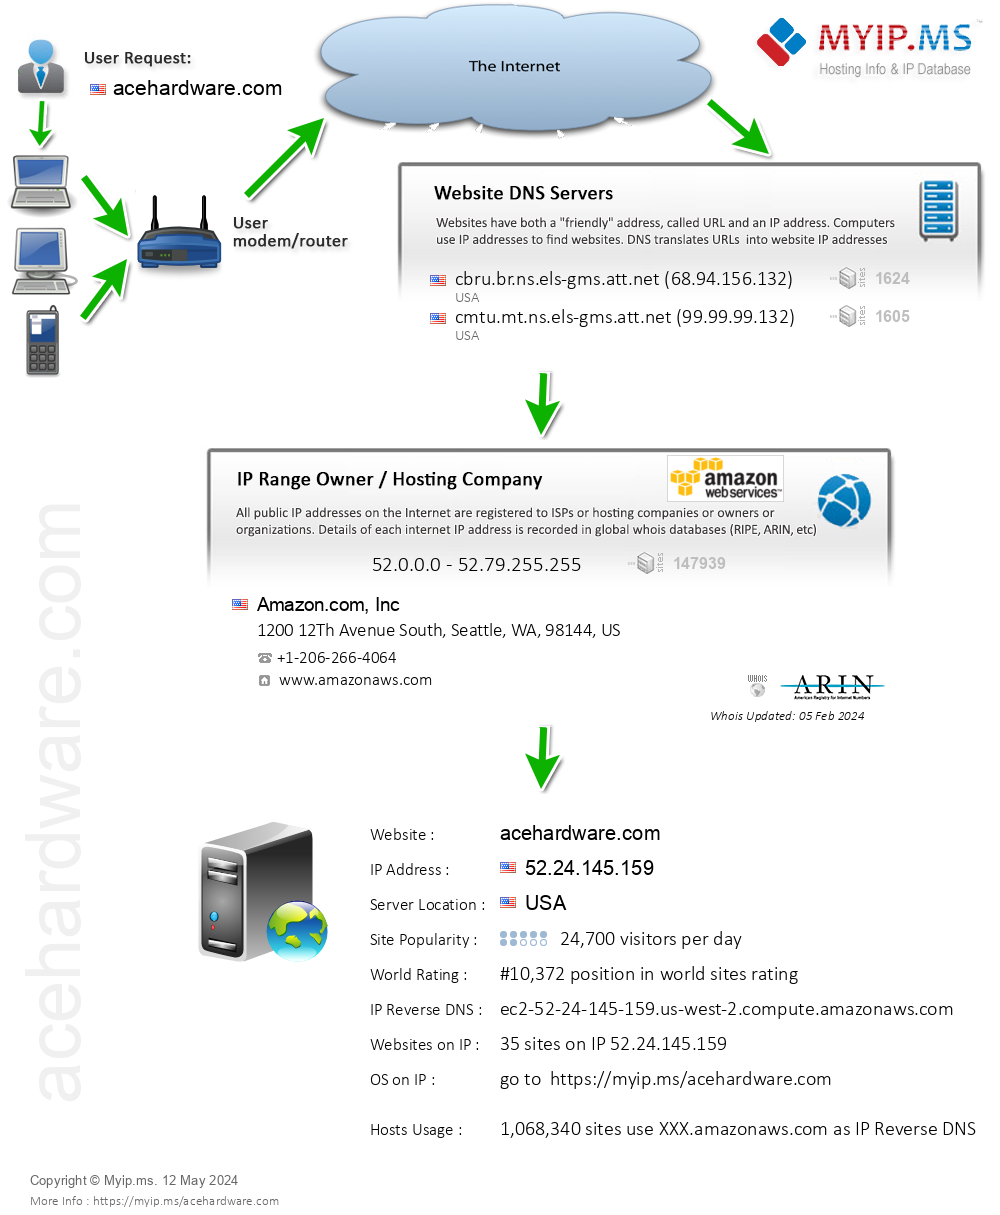 Acehardware.com - Website Hosting Visual IP Diagram